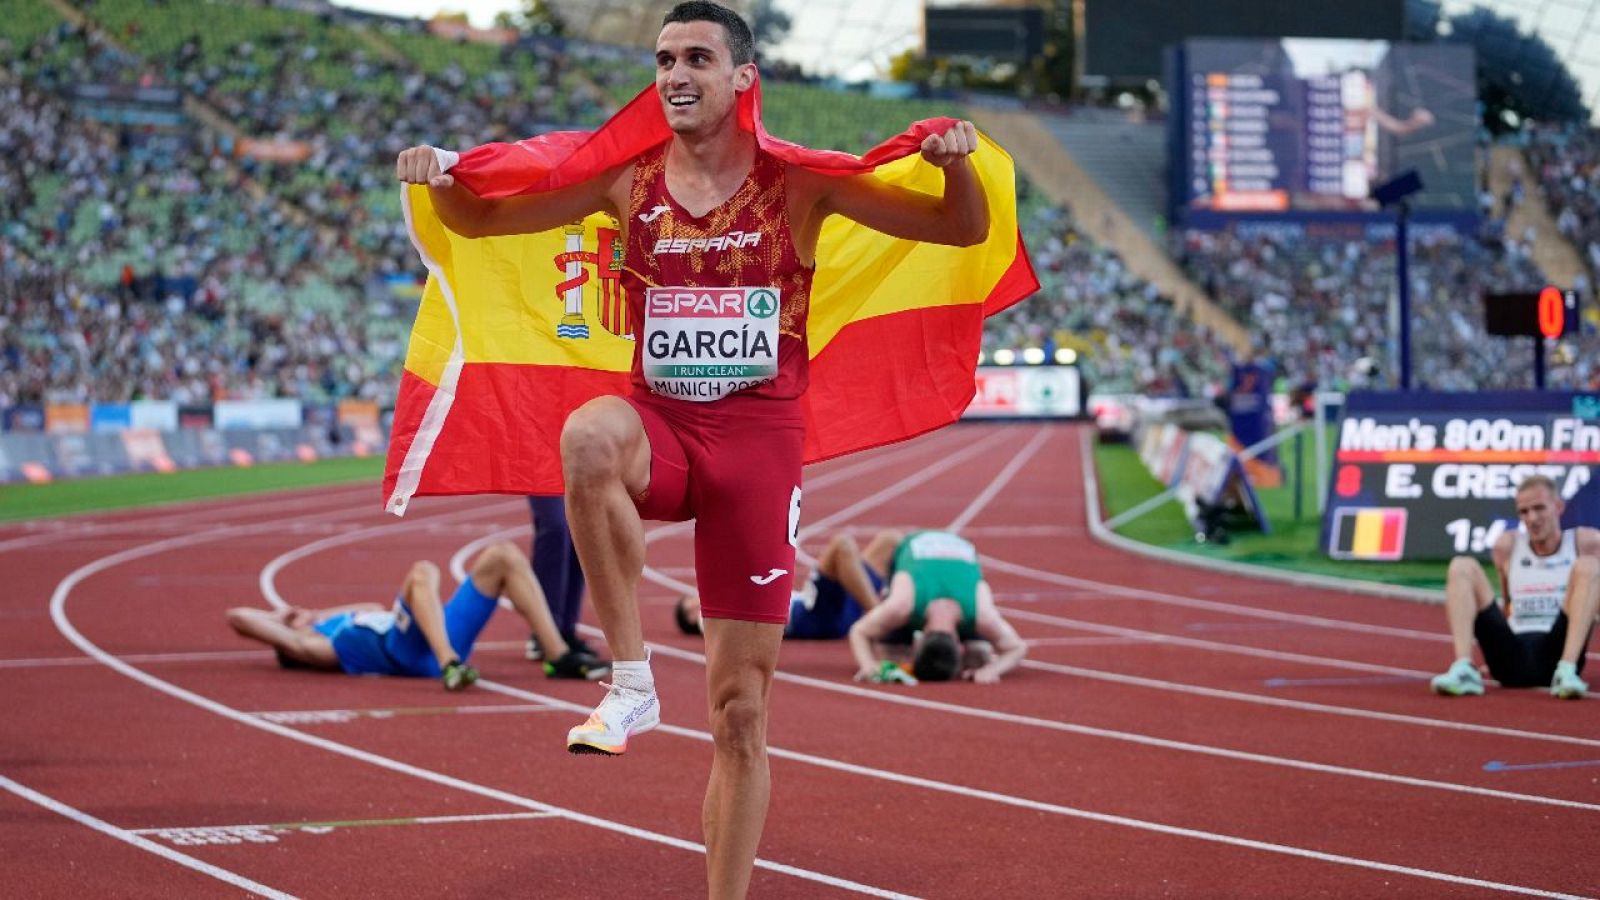 Entrevista con el atleta Mariano García | Conexión París 2024